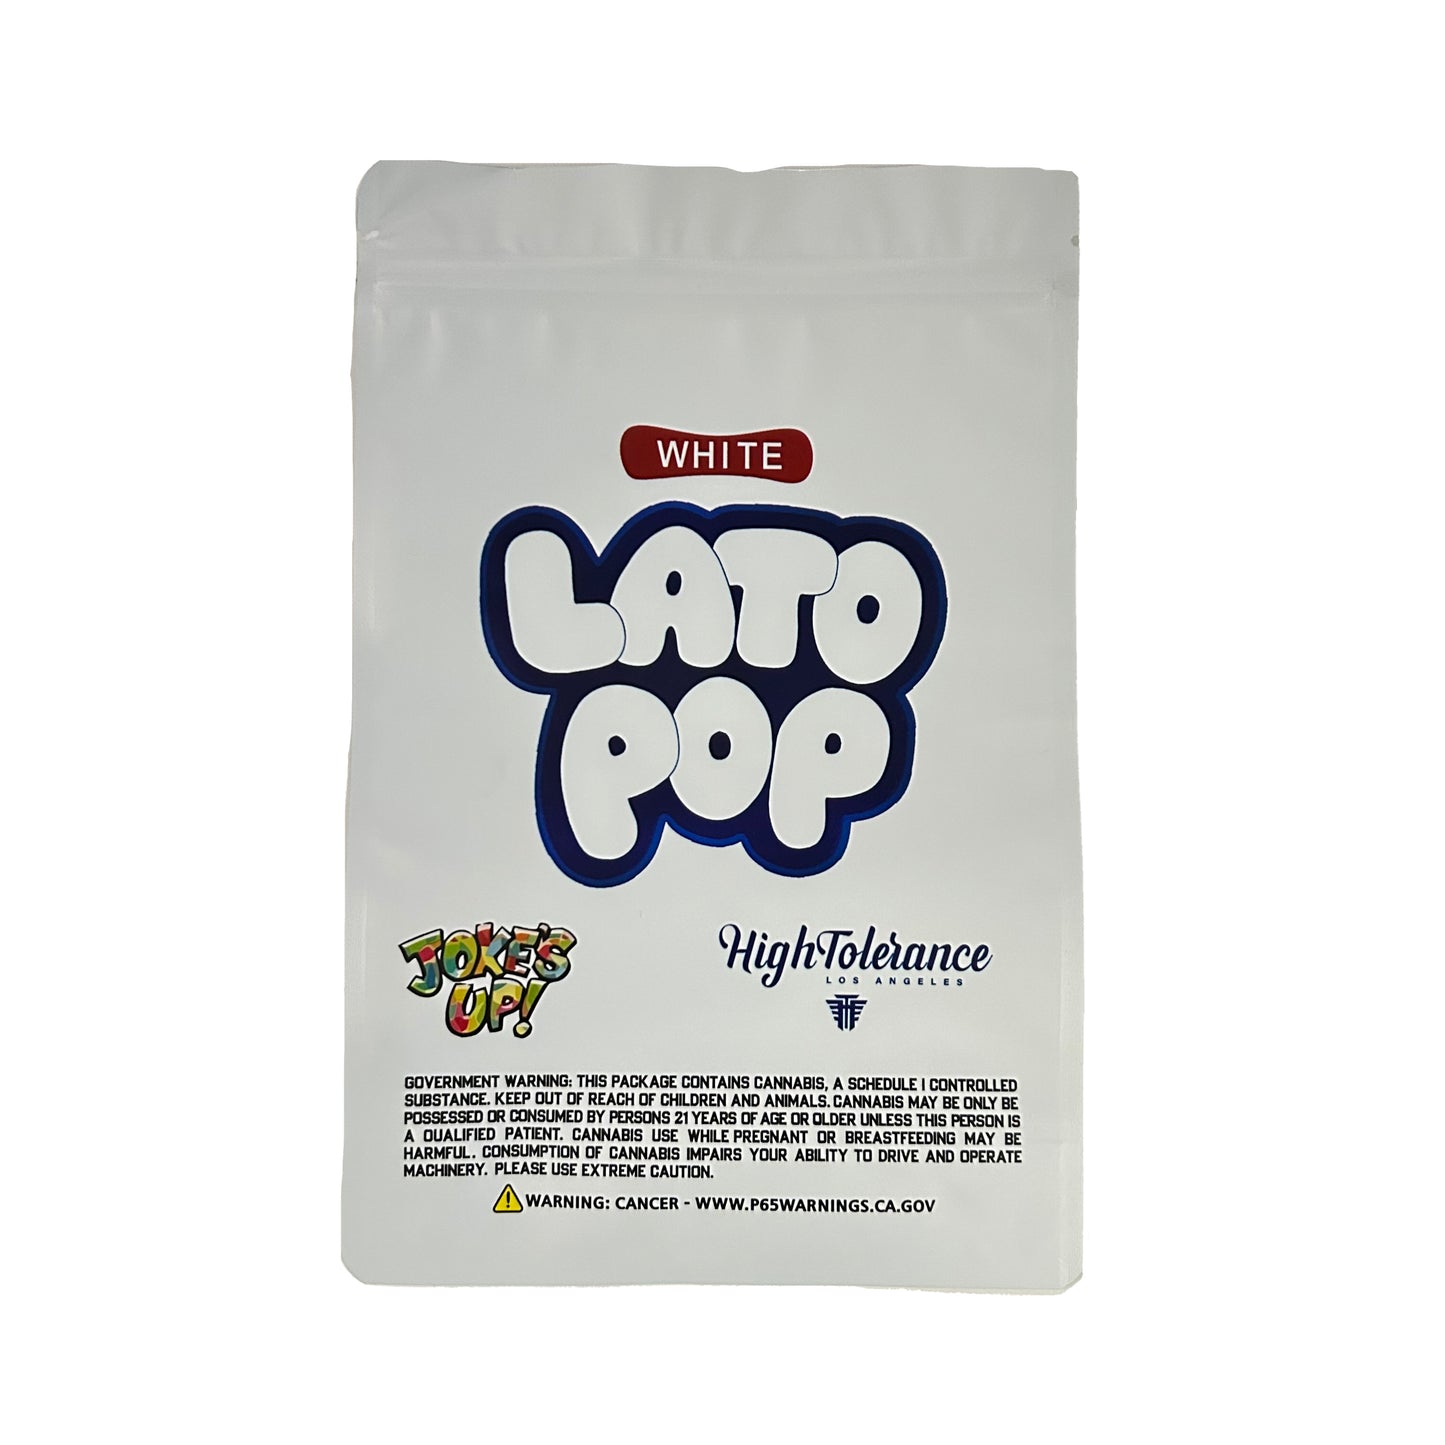 White Lato Pop Jokes UP! 1 oz Mylar Bag